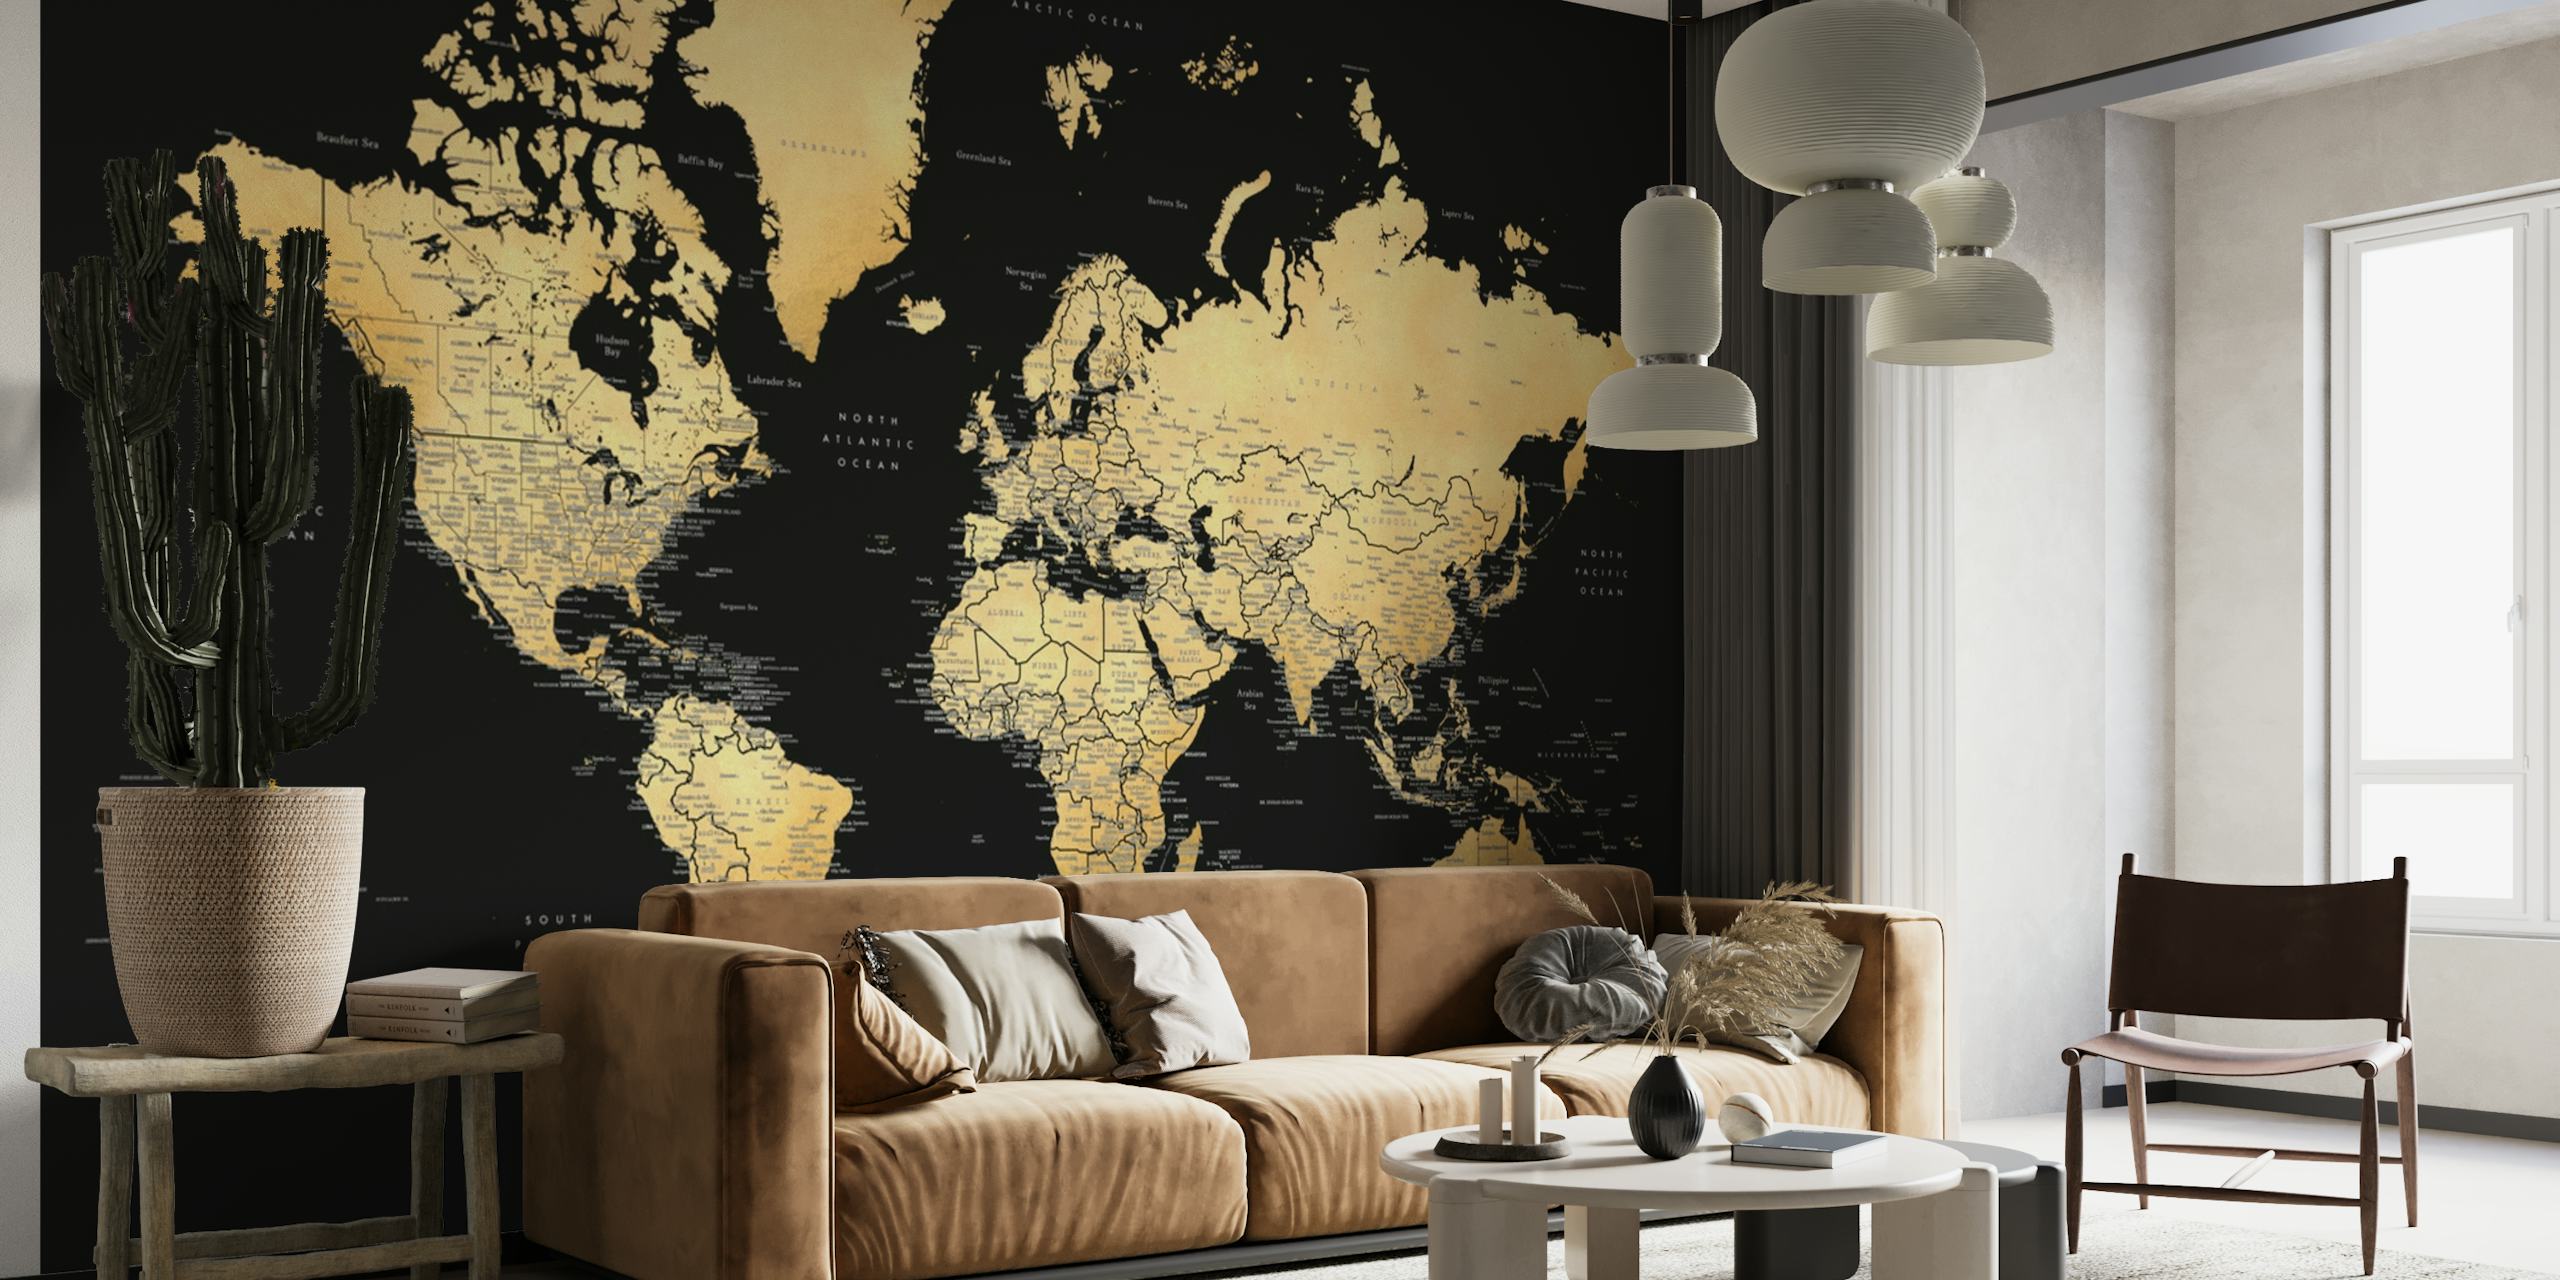 Fotomural vinílico elegante de mapa mundial em ricos tons sépia com etiquetas detalhadas